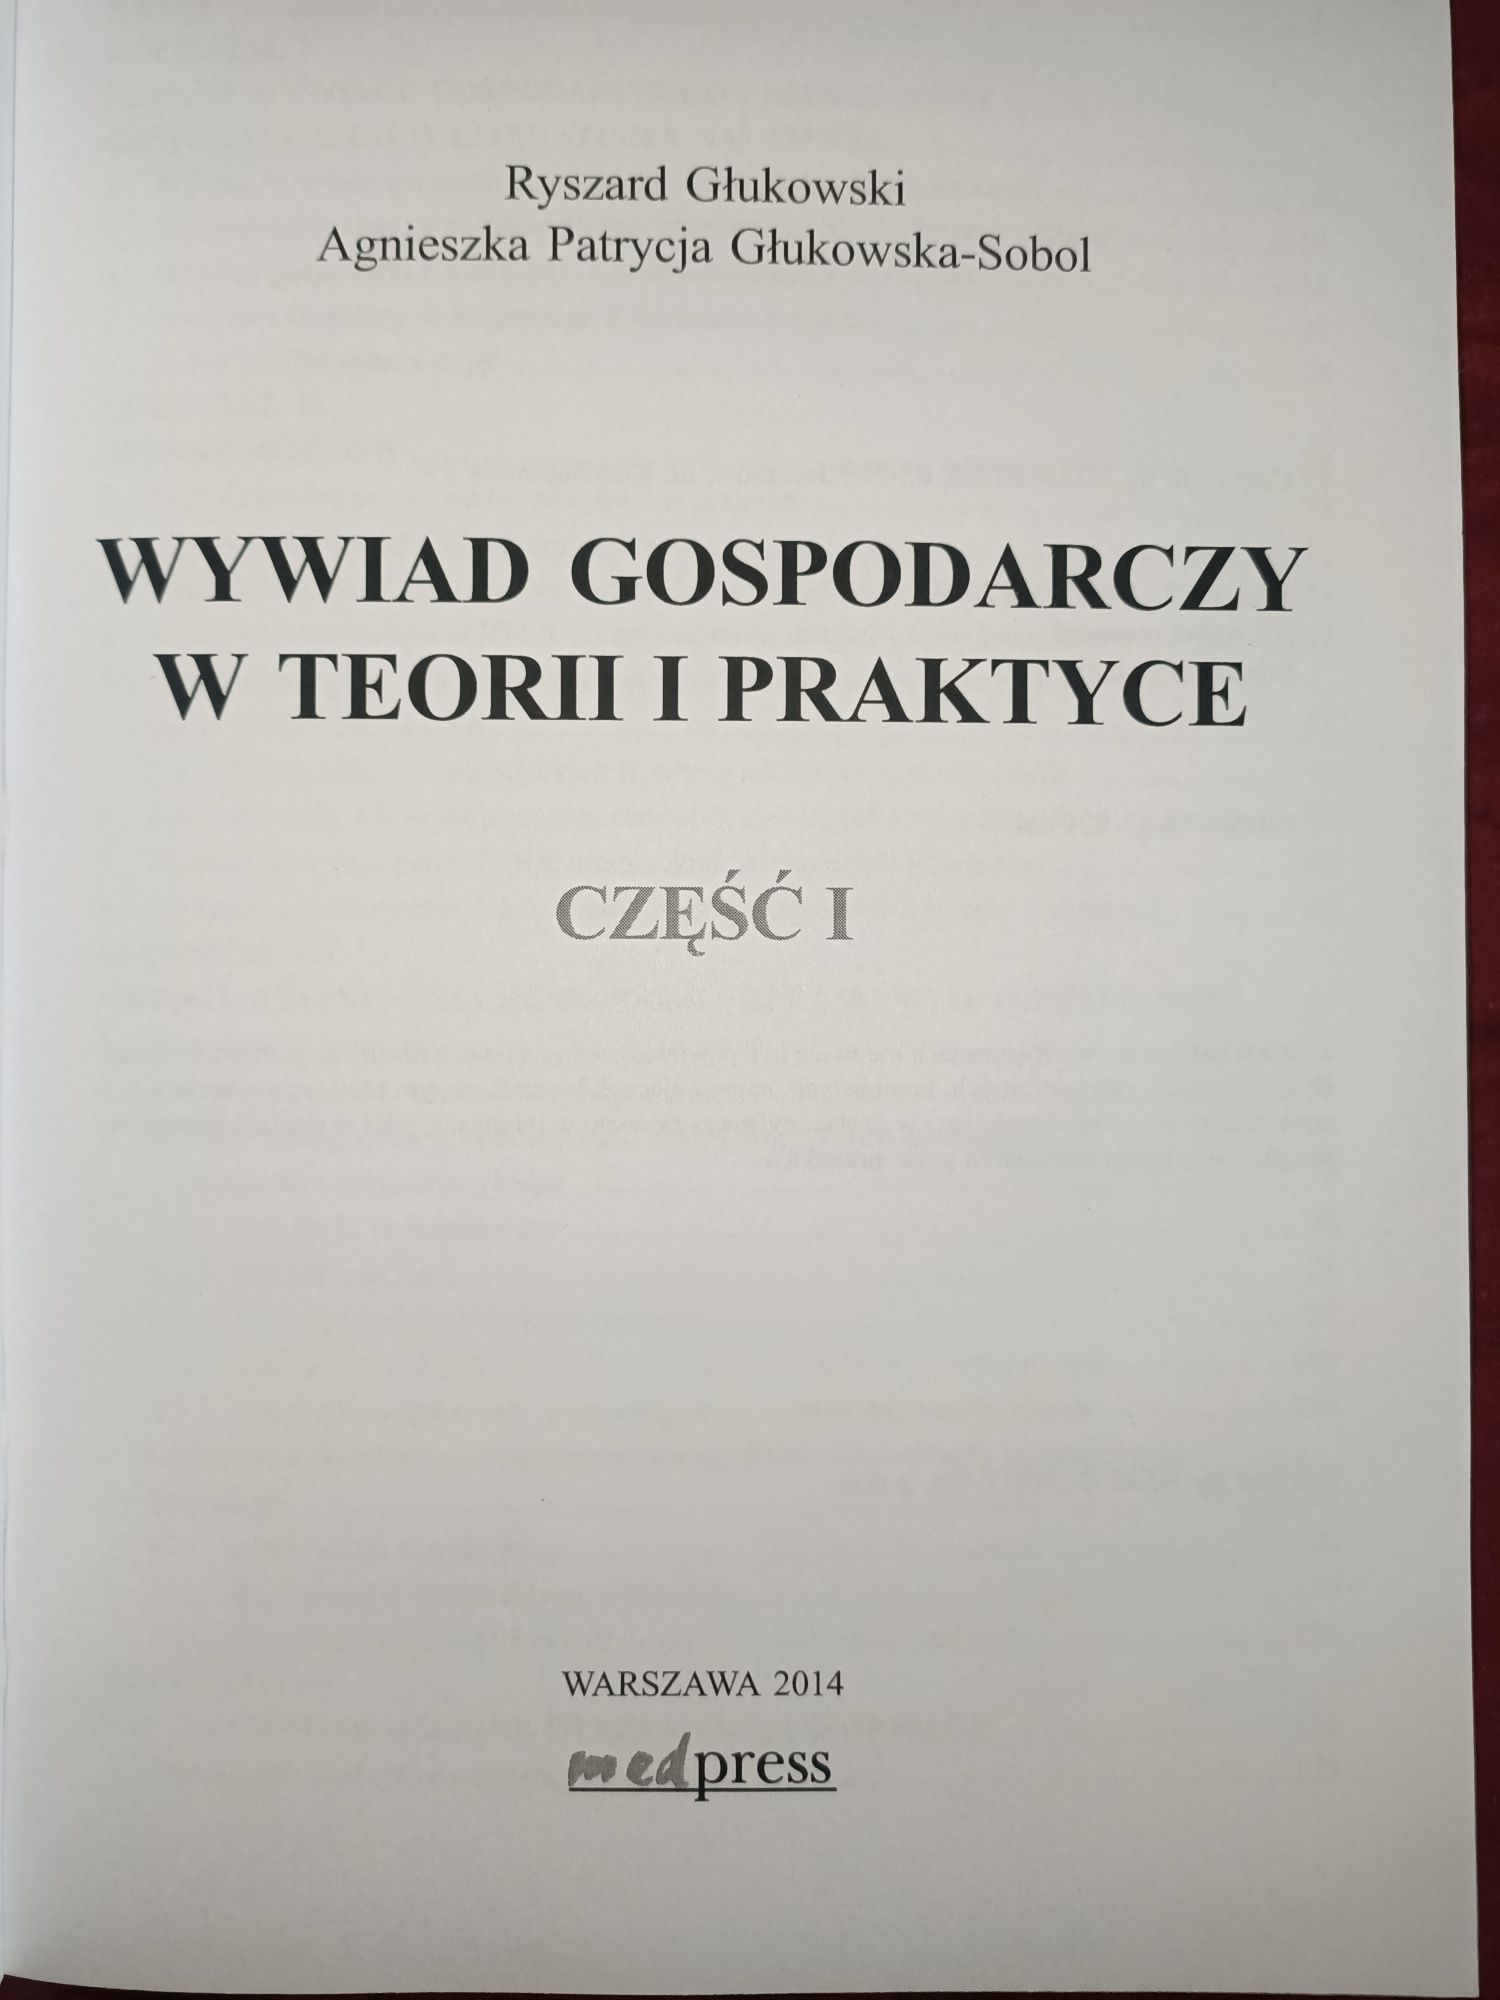 Wywiad gospodarczy w teorii i praktyce Głukowski